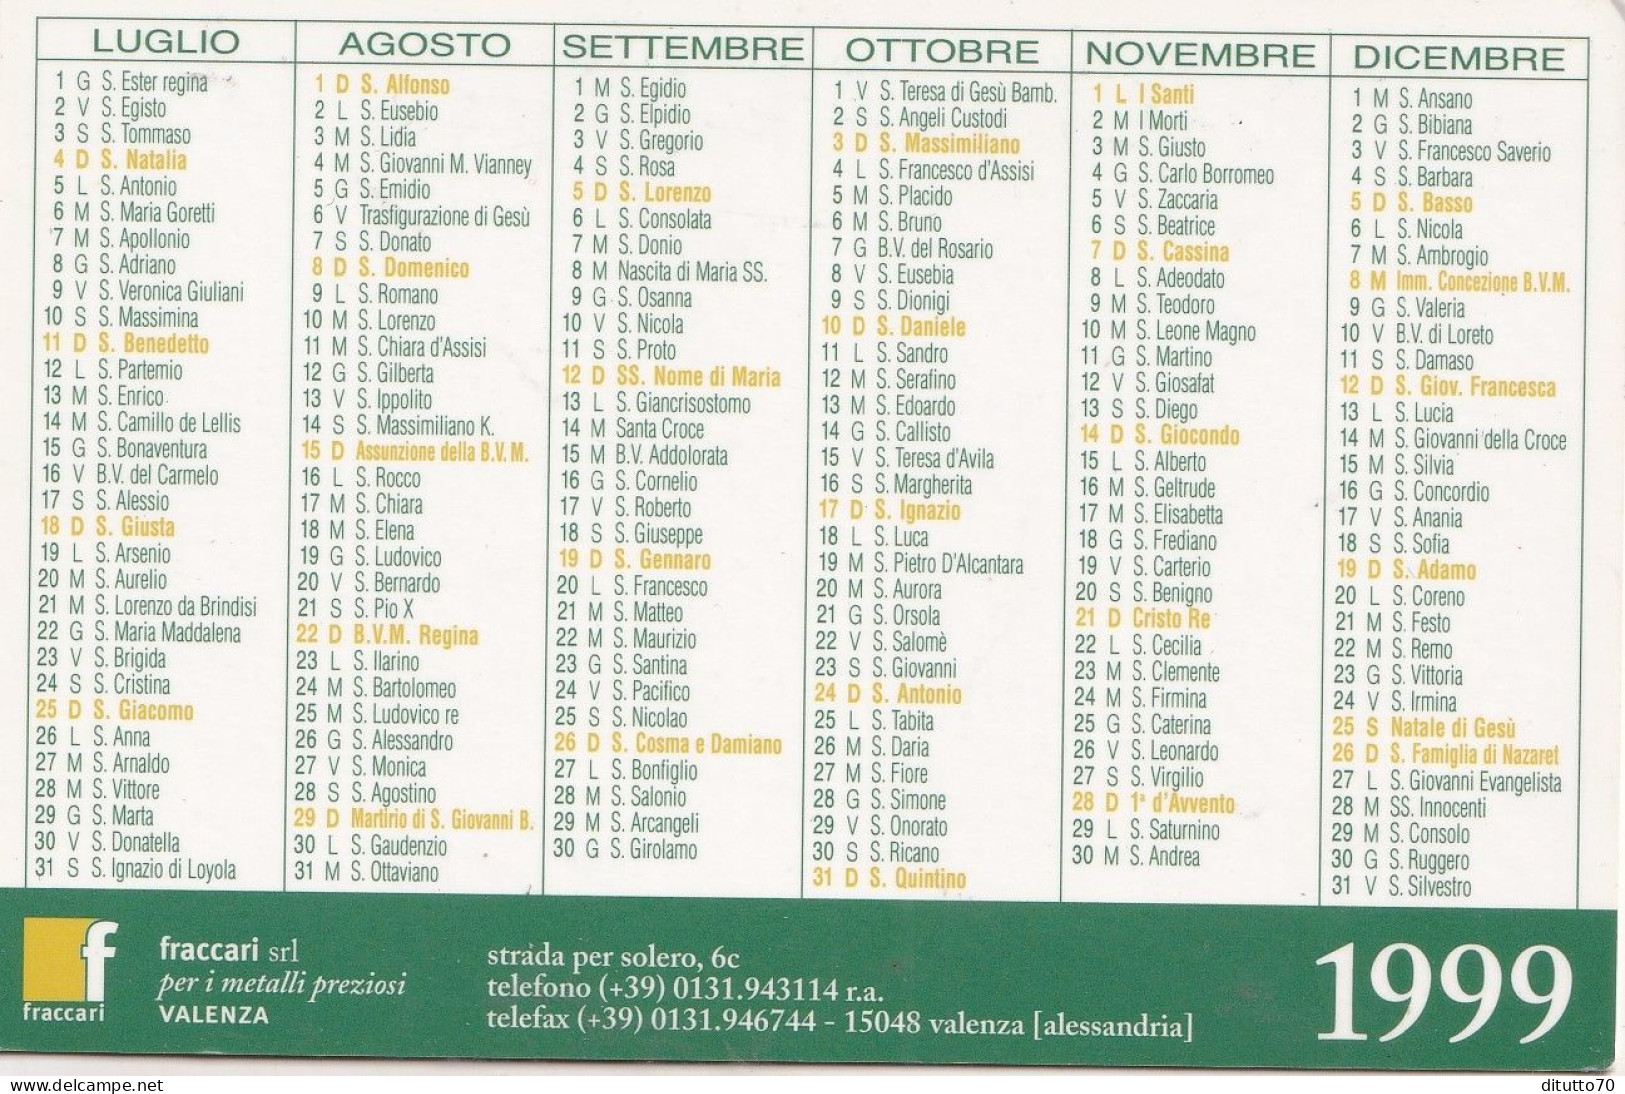 Calendarietto - Fraccari - Valenza - Anno 1999 - Small : 1991-00